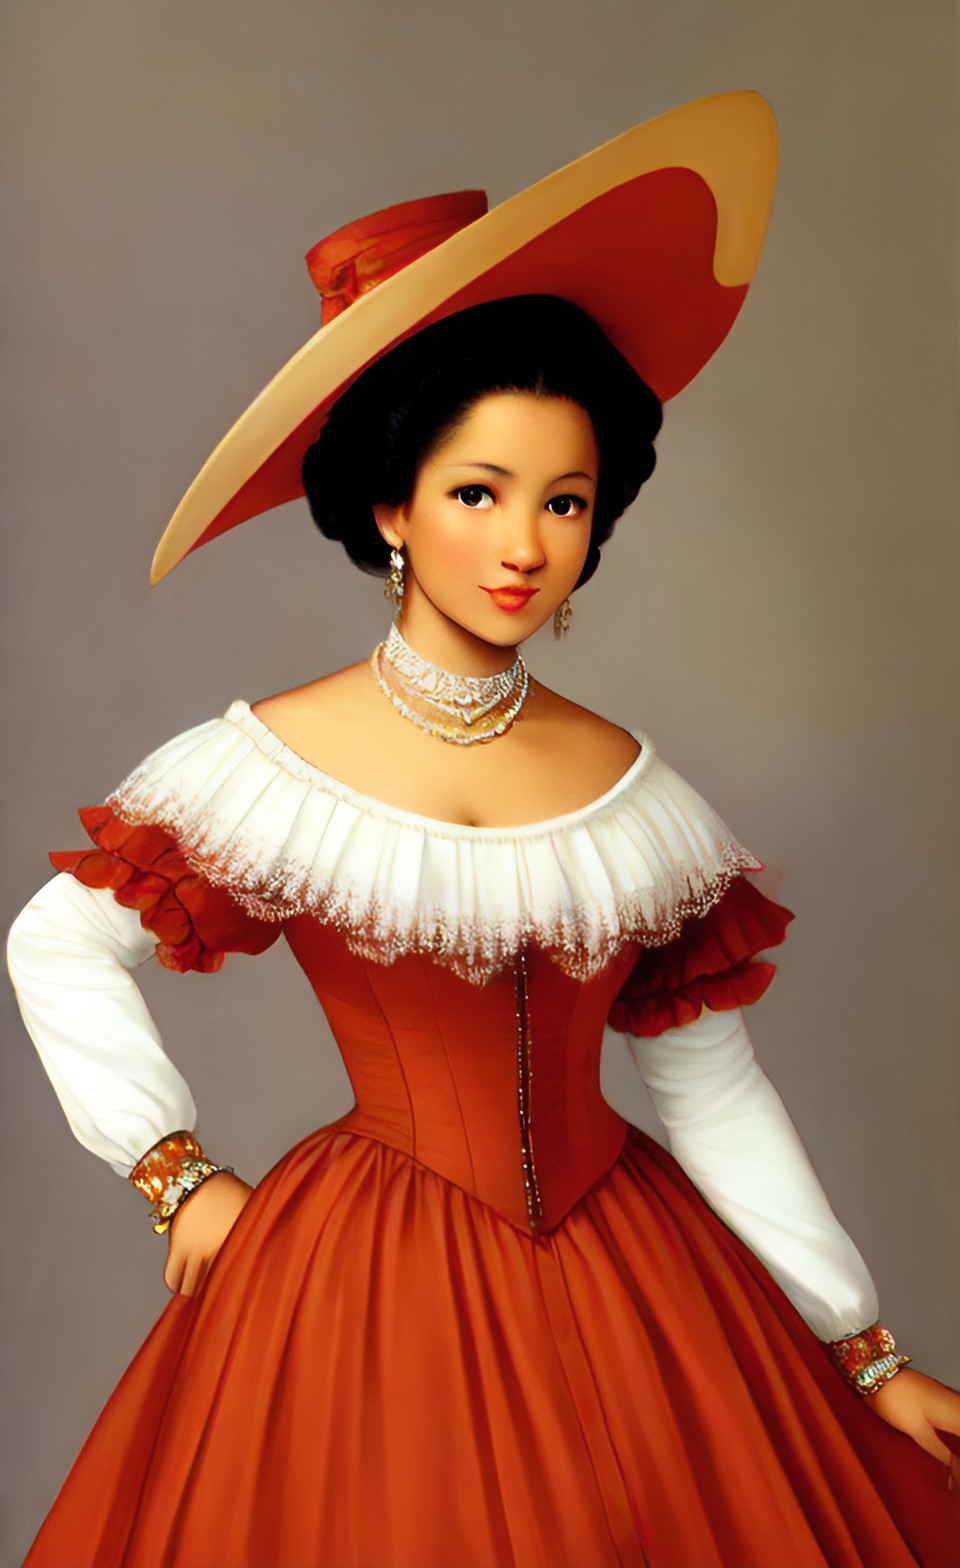 Mixed-race women in fine Shakespearean era party dresses Mixra228